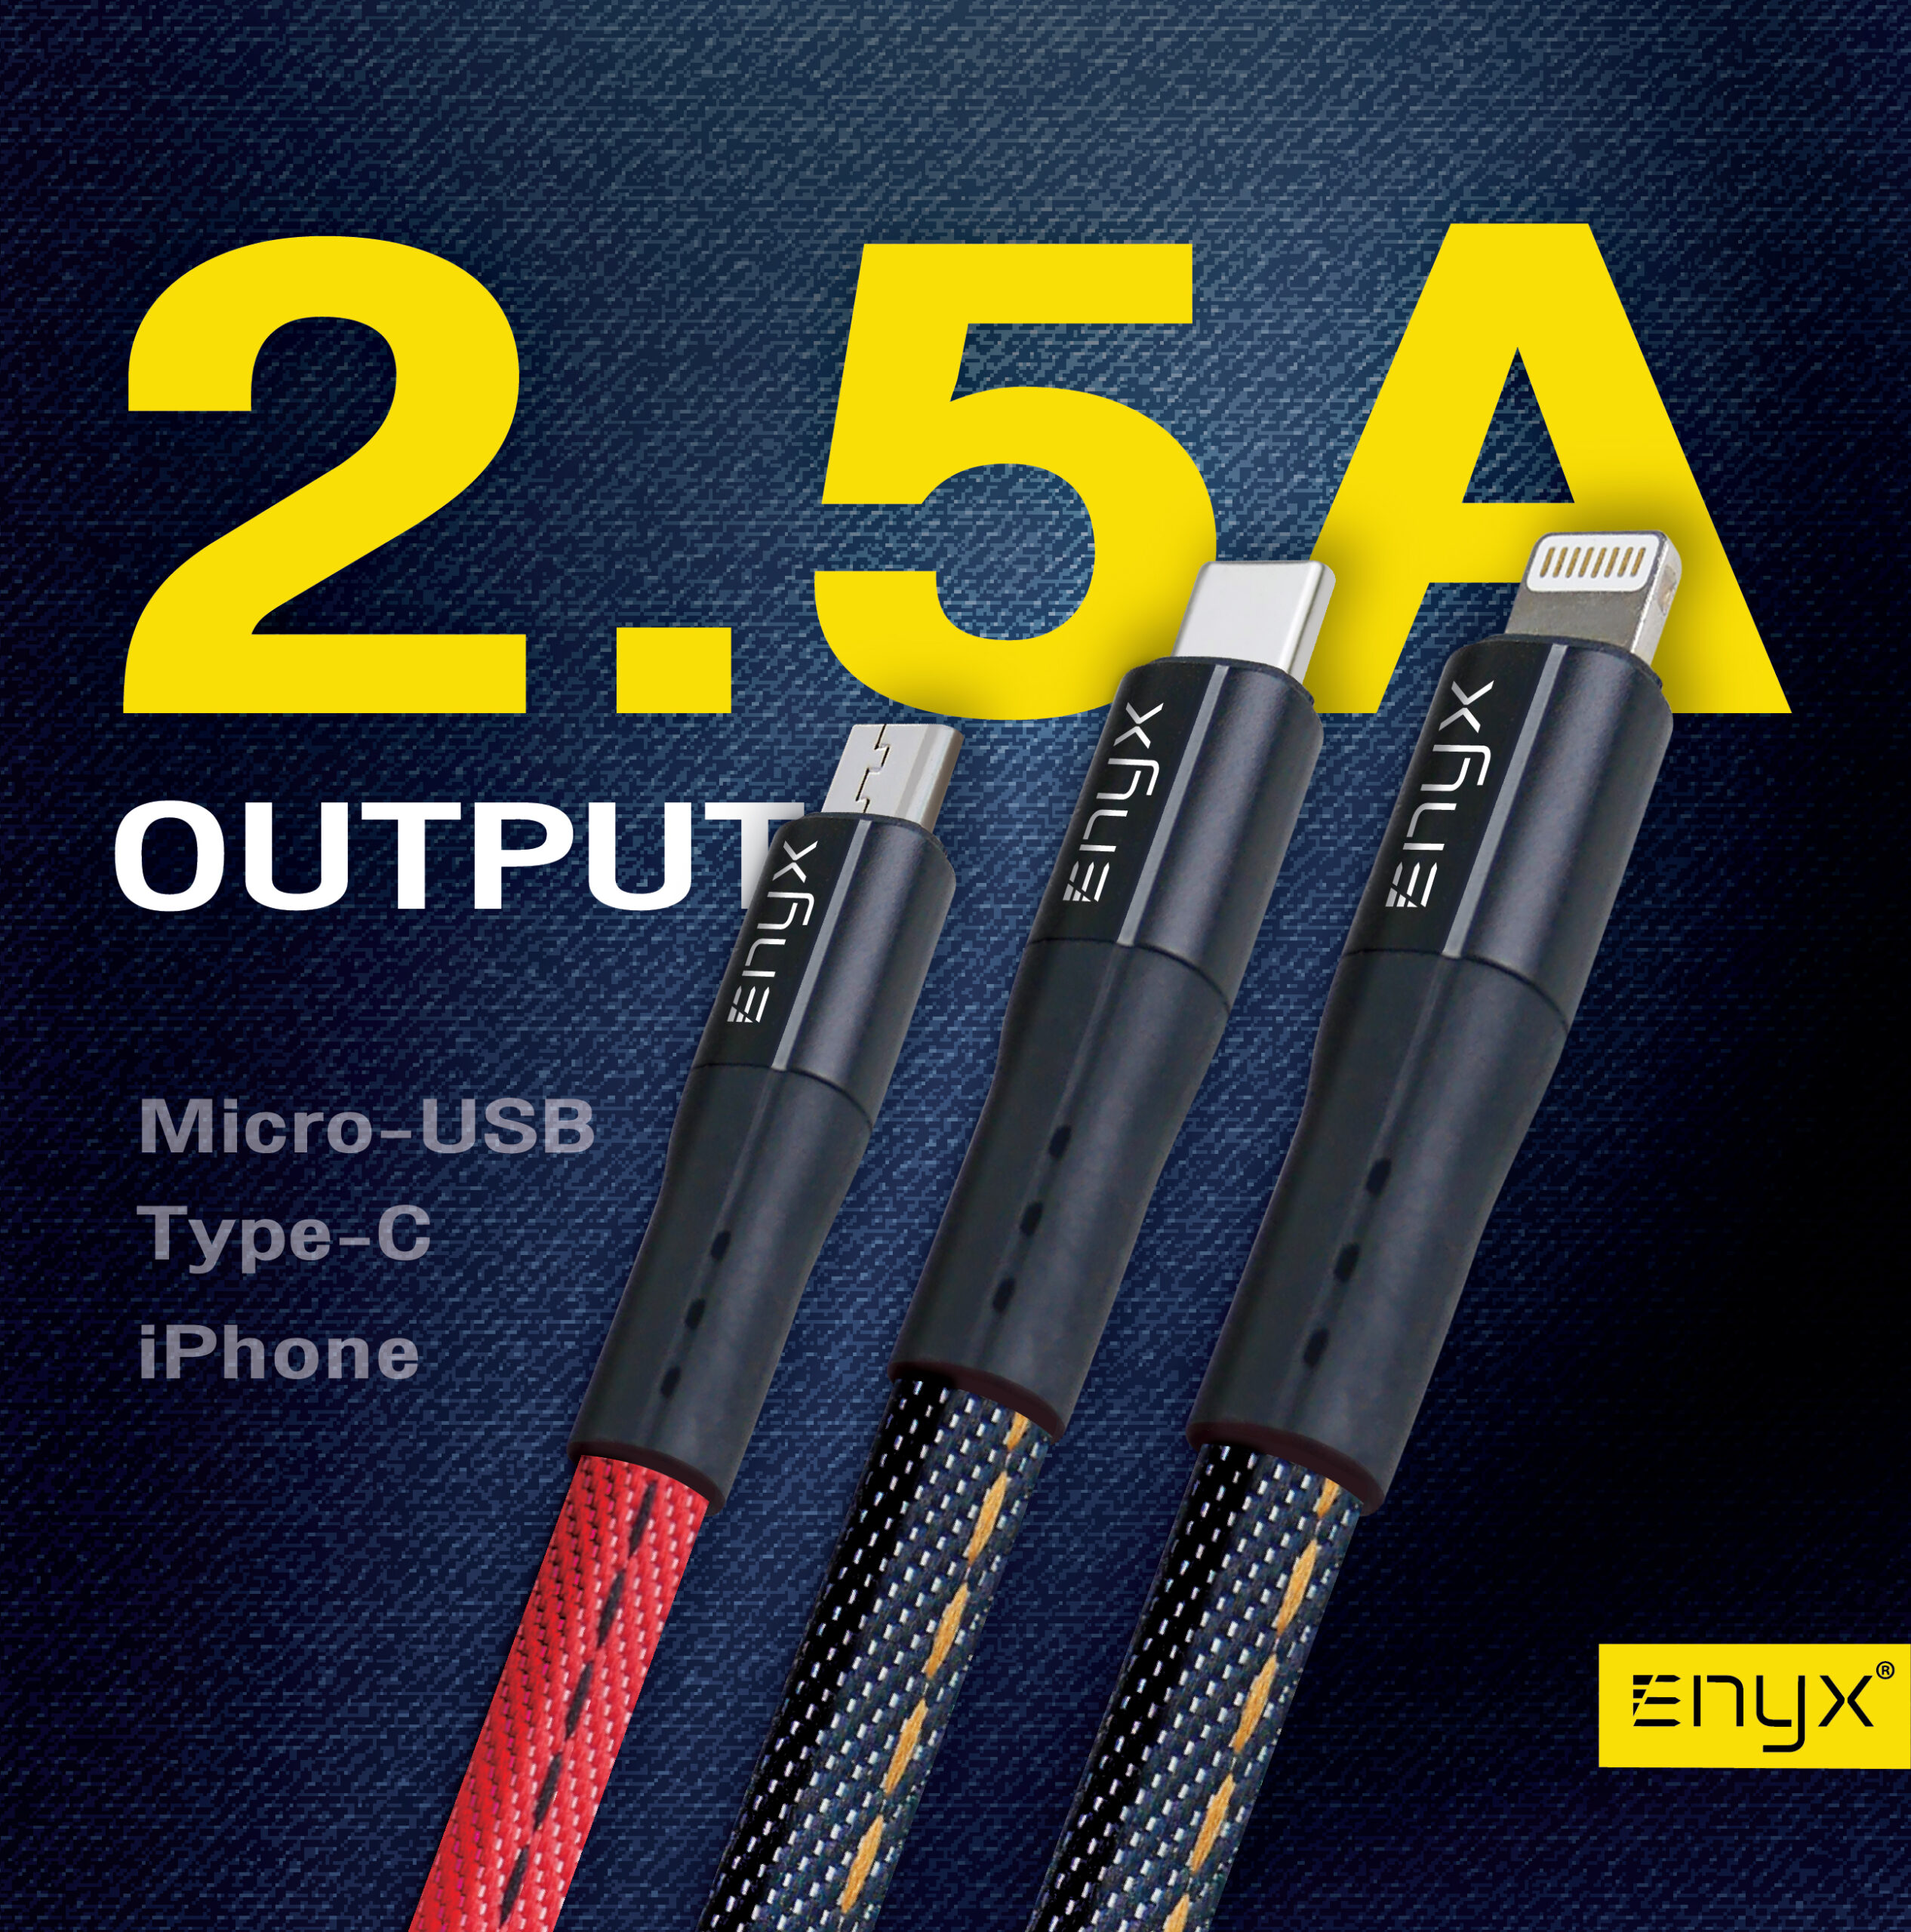 สายชาร์จ ENYX 2.5A Usb Cable อีนิกซ์ fast charge Jean ยีนส์